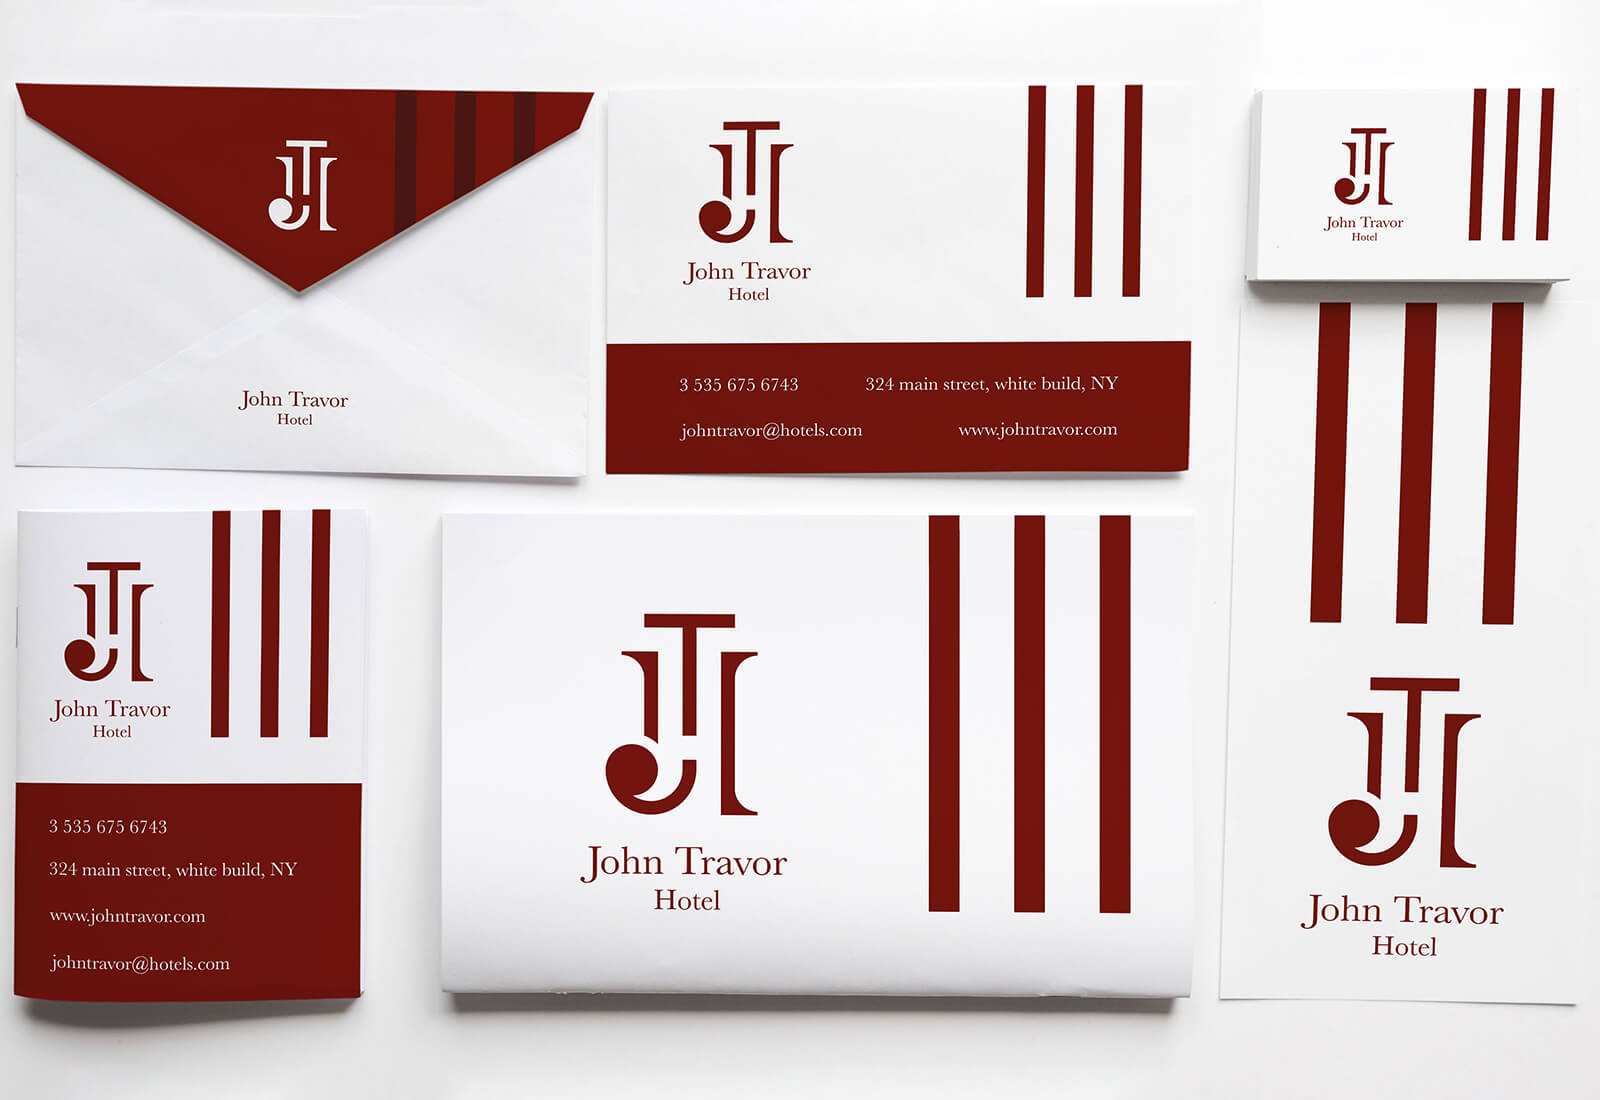 Logo e brand identity di John Travor Hotel realizzato da SEBA! grafico di Gravellona Toce nel VCO di busta da lettere, carta d'invito, biglietto da visita e libretto illustrativo